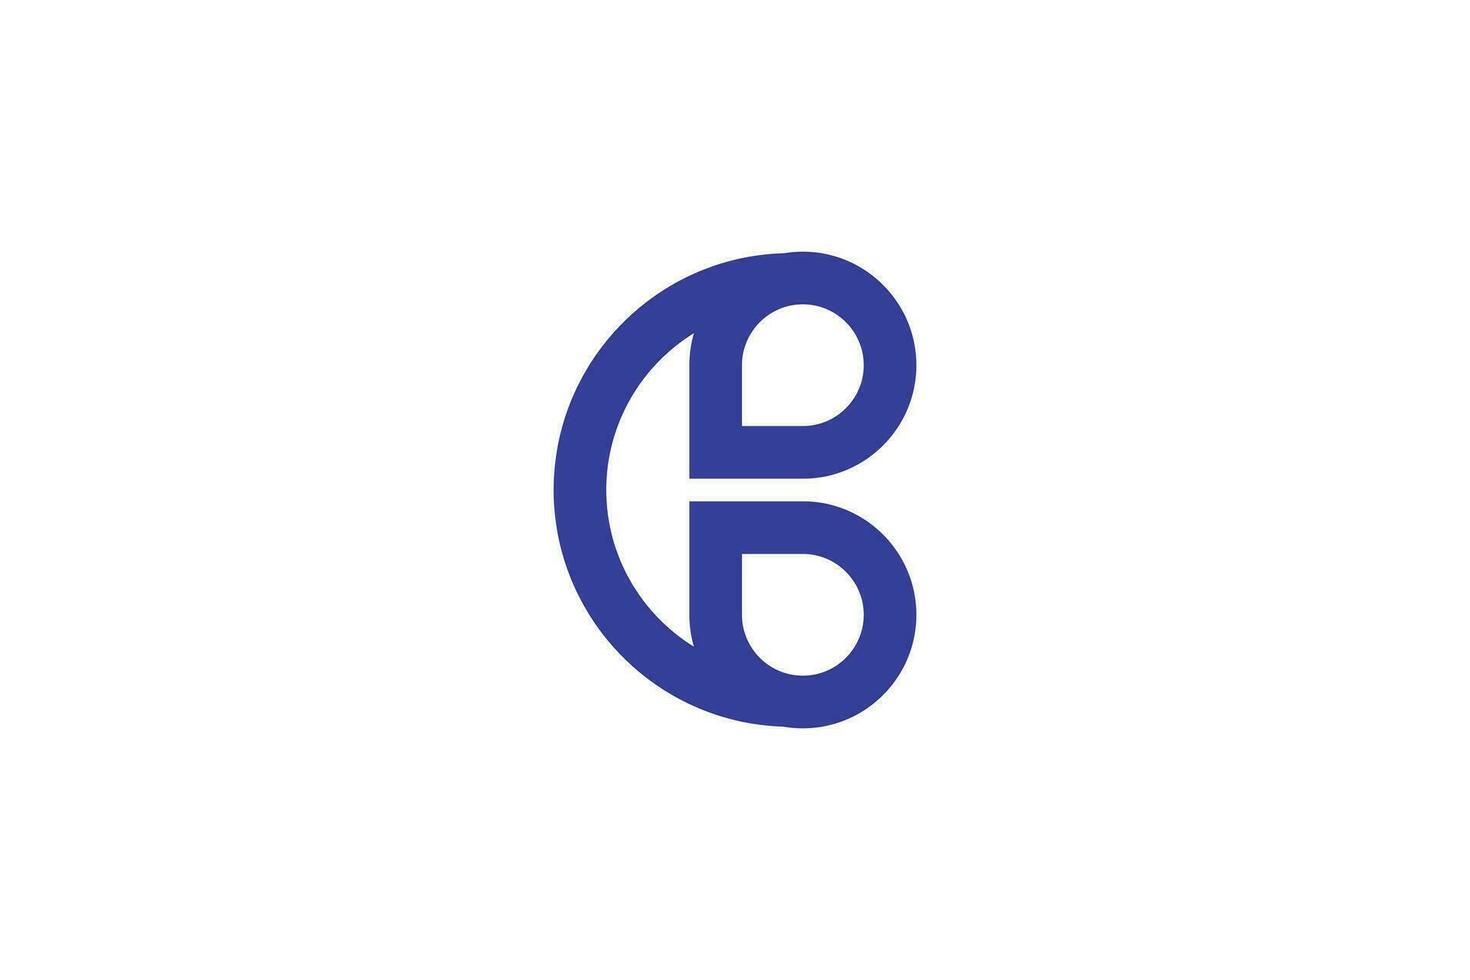 kreativ und minimalistisch Brief c b Logo Design Vorlage auf Weiß Hintergrund vektor